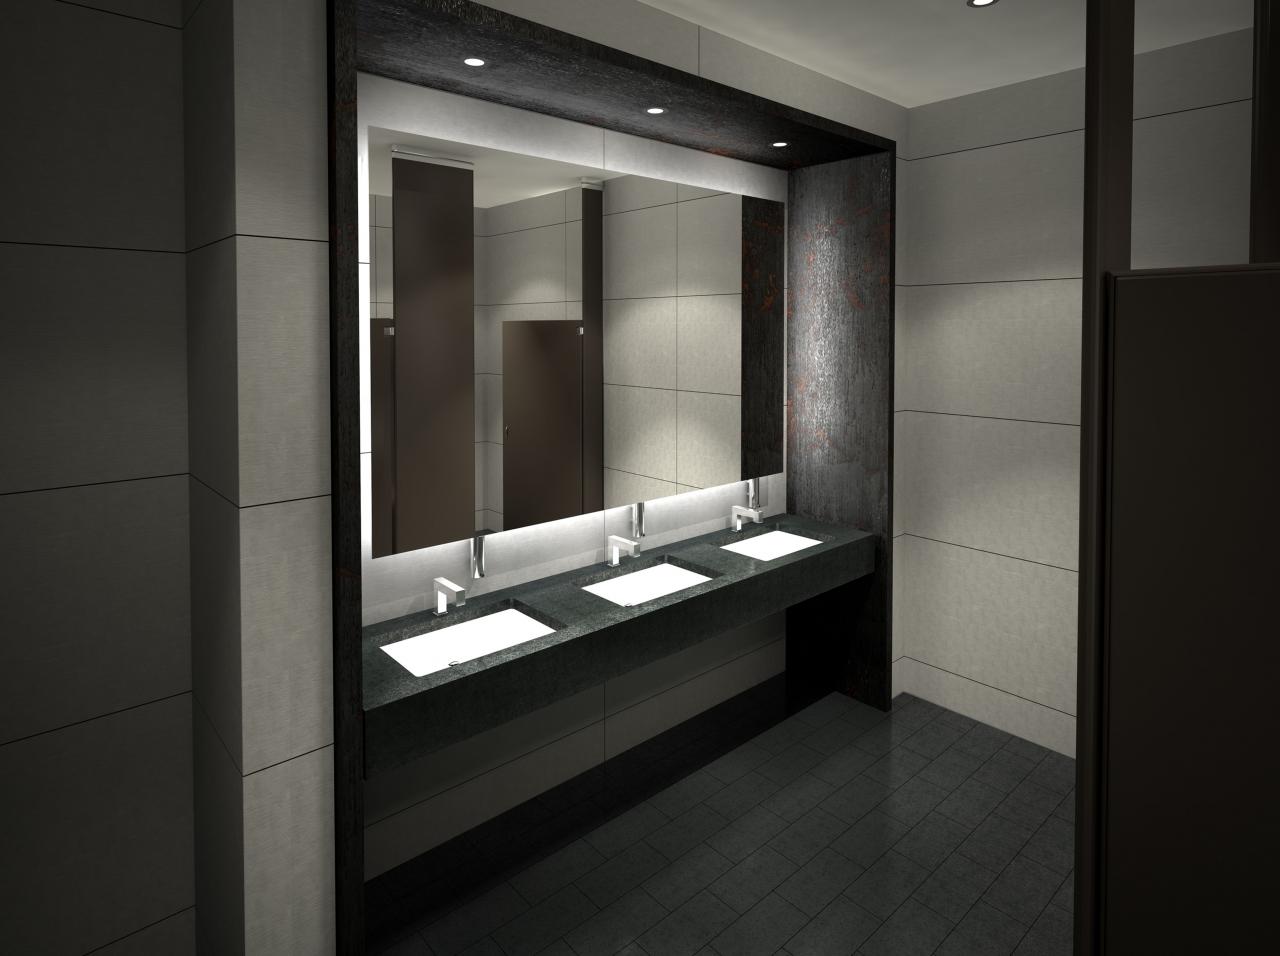 216 West 18th Office bathroom design, Restroom design, Commercial